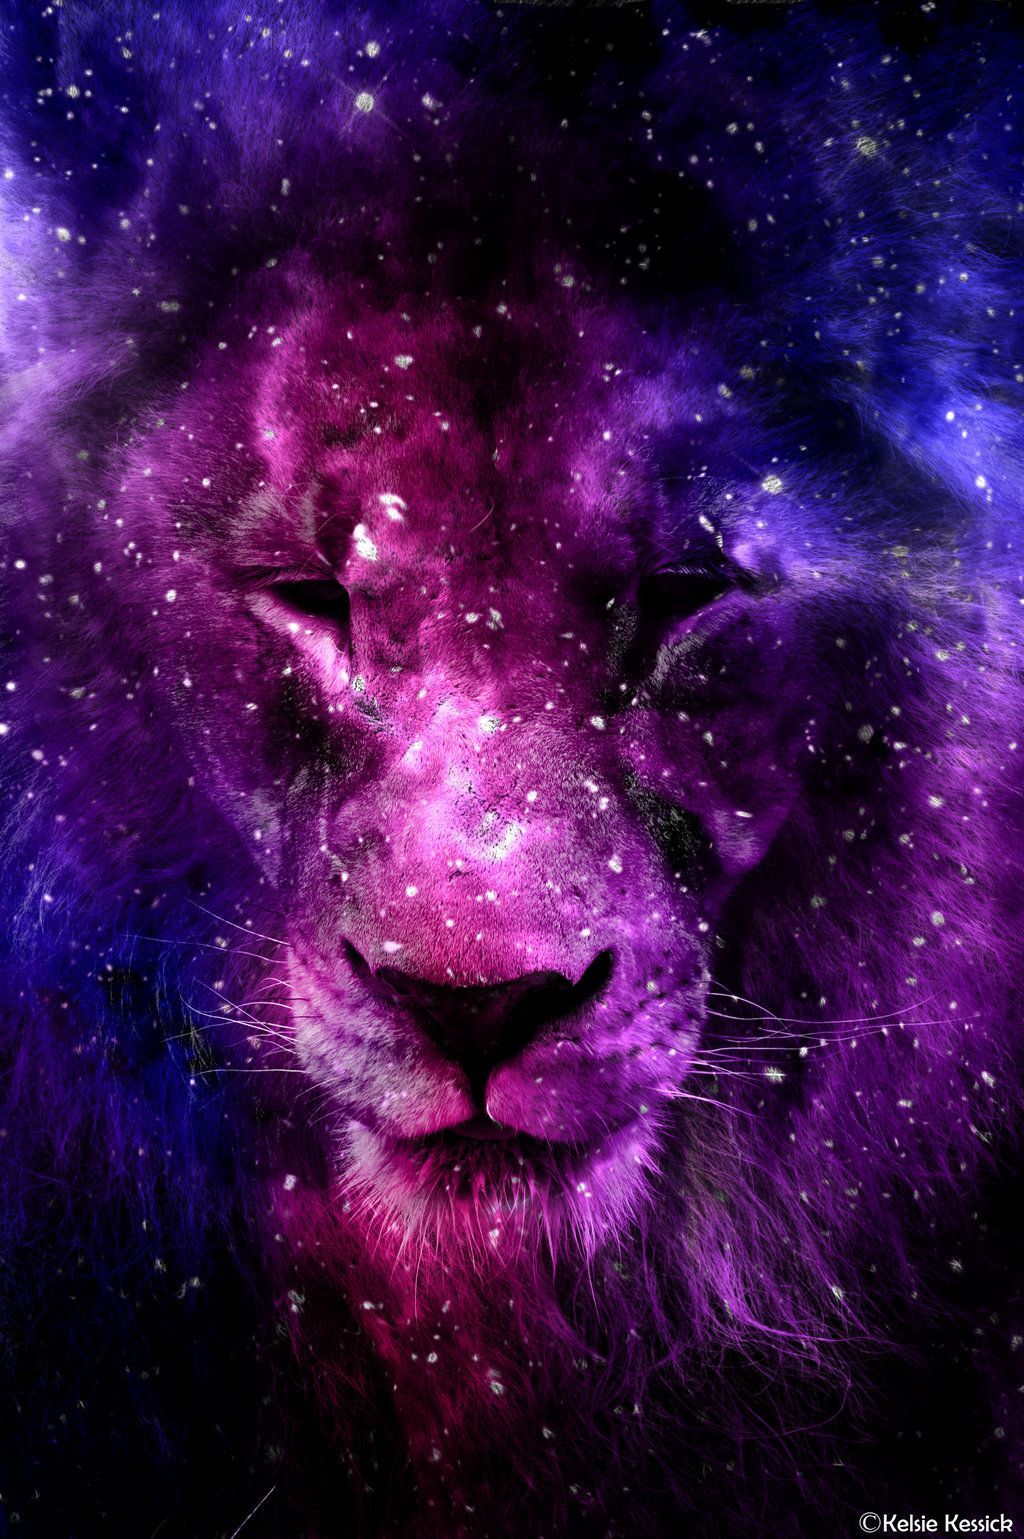 Hình nền sư tử tuyệt đẹp trong vũ trụ có trên WallpaperDog, mang đến cho bạn trải nghiệm tuyệt vời nhất. Với chất lượng hình ảnh sắc nét và đẹp mắt, bạn sẽ được tận hưởng vẻ đẹp tuyệt vời của vũ trụ và sức mạnh của sư tử cùng nhau.